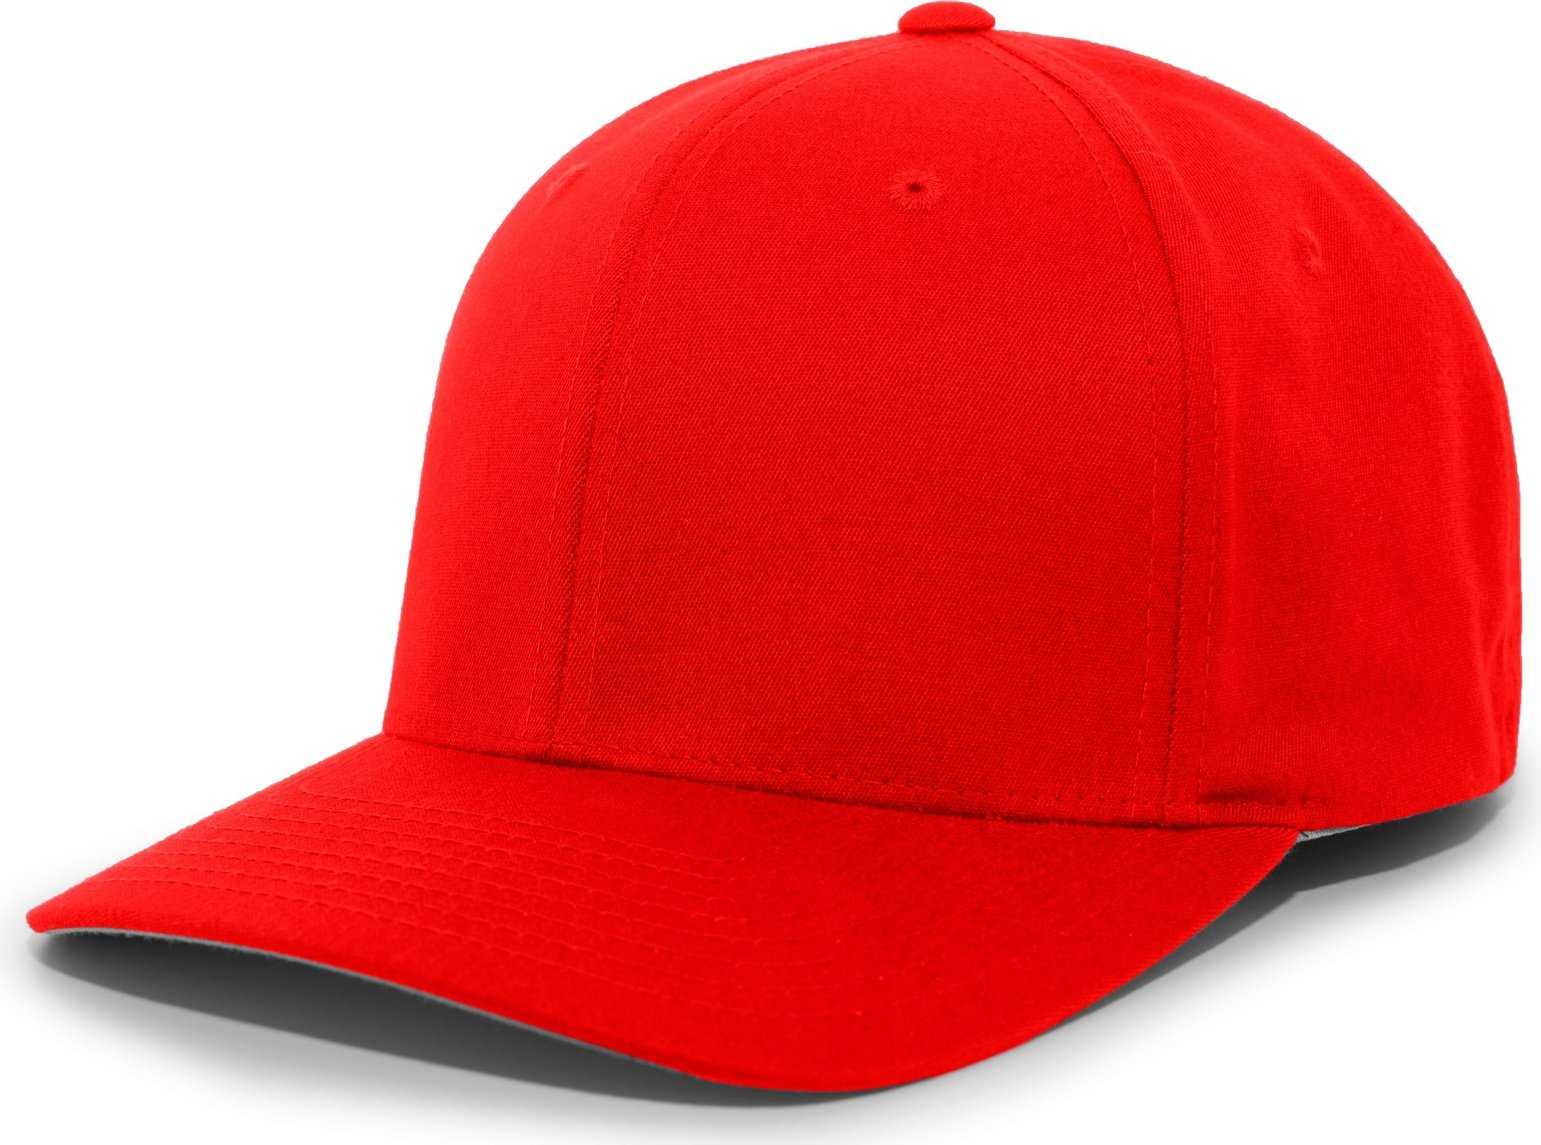 Pacific Headwear 430C Cotton-Poly Flexfit Cap - Red - HIT a Double